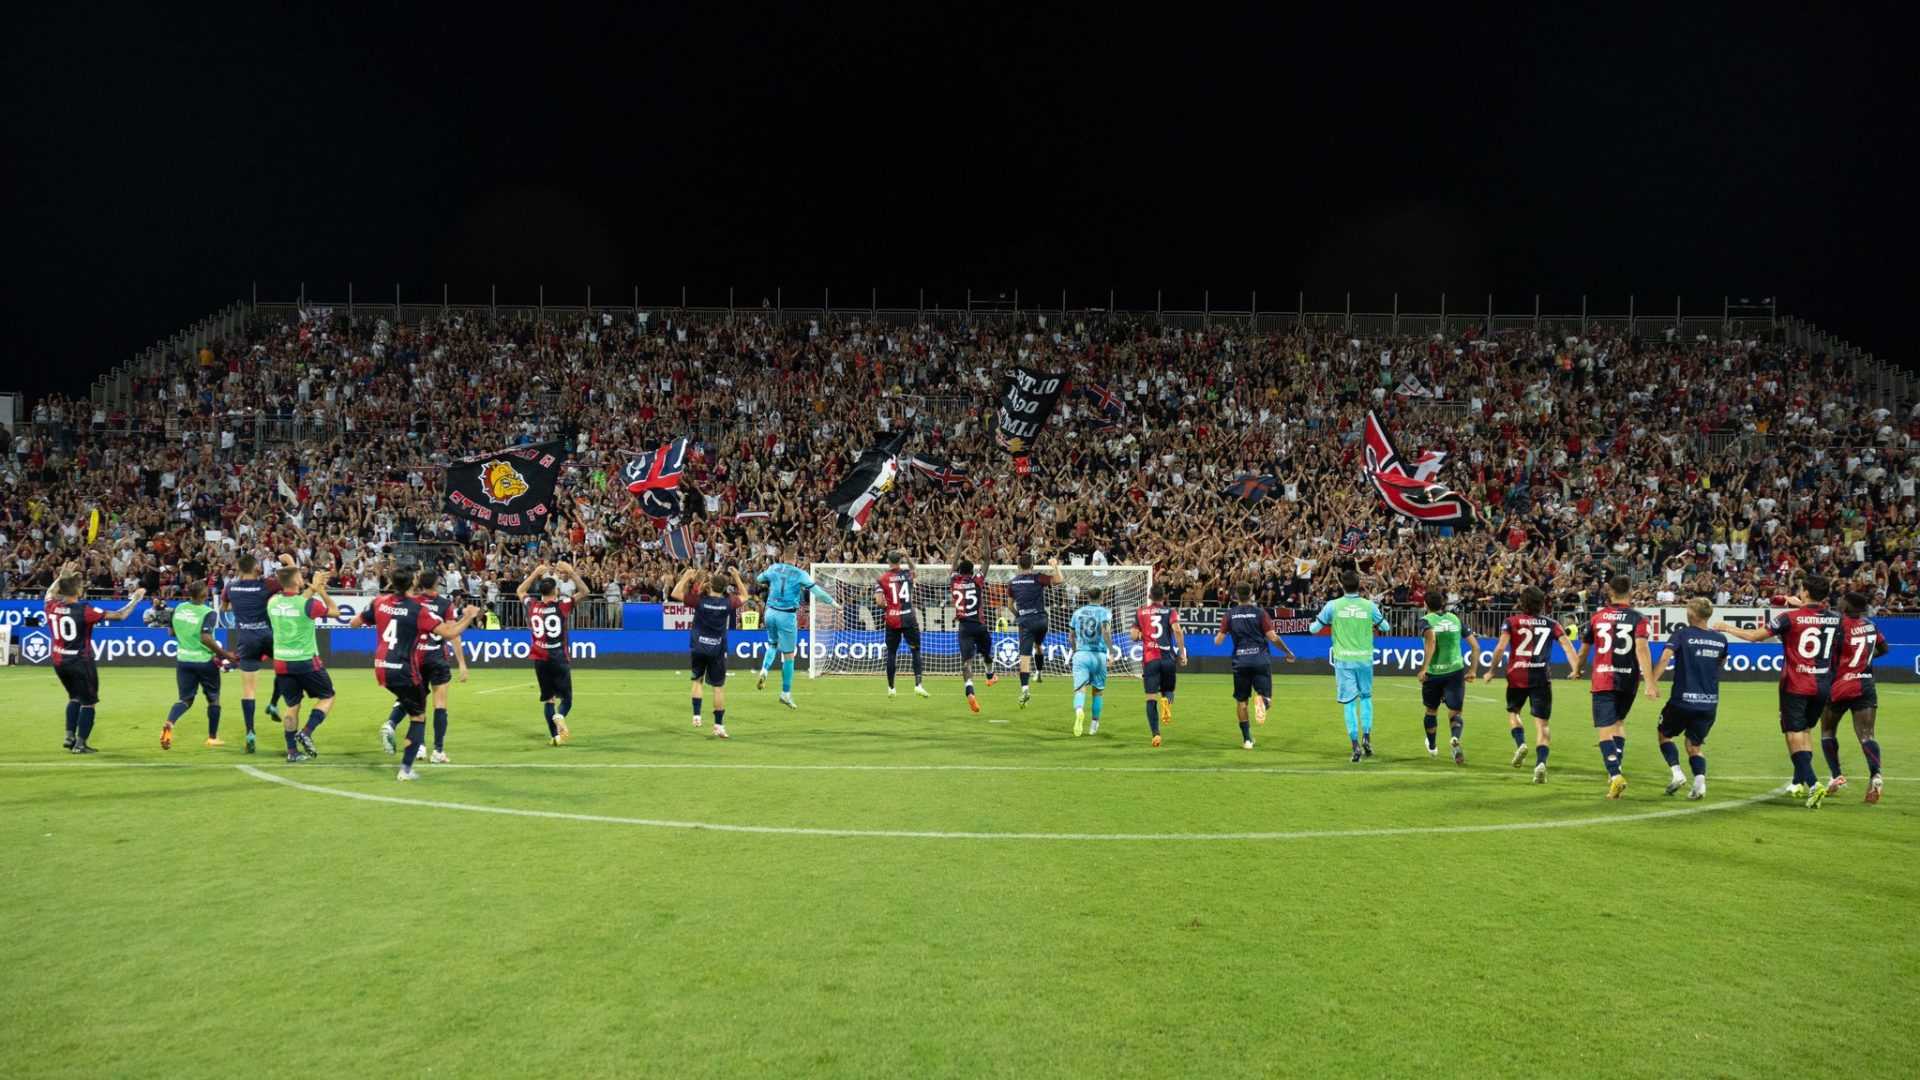 Le pagelle di Cagliari-Inter (0-2): i nerazzurri la chiudono nel primo tempo